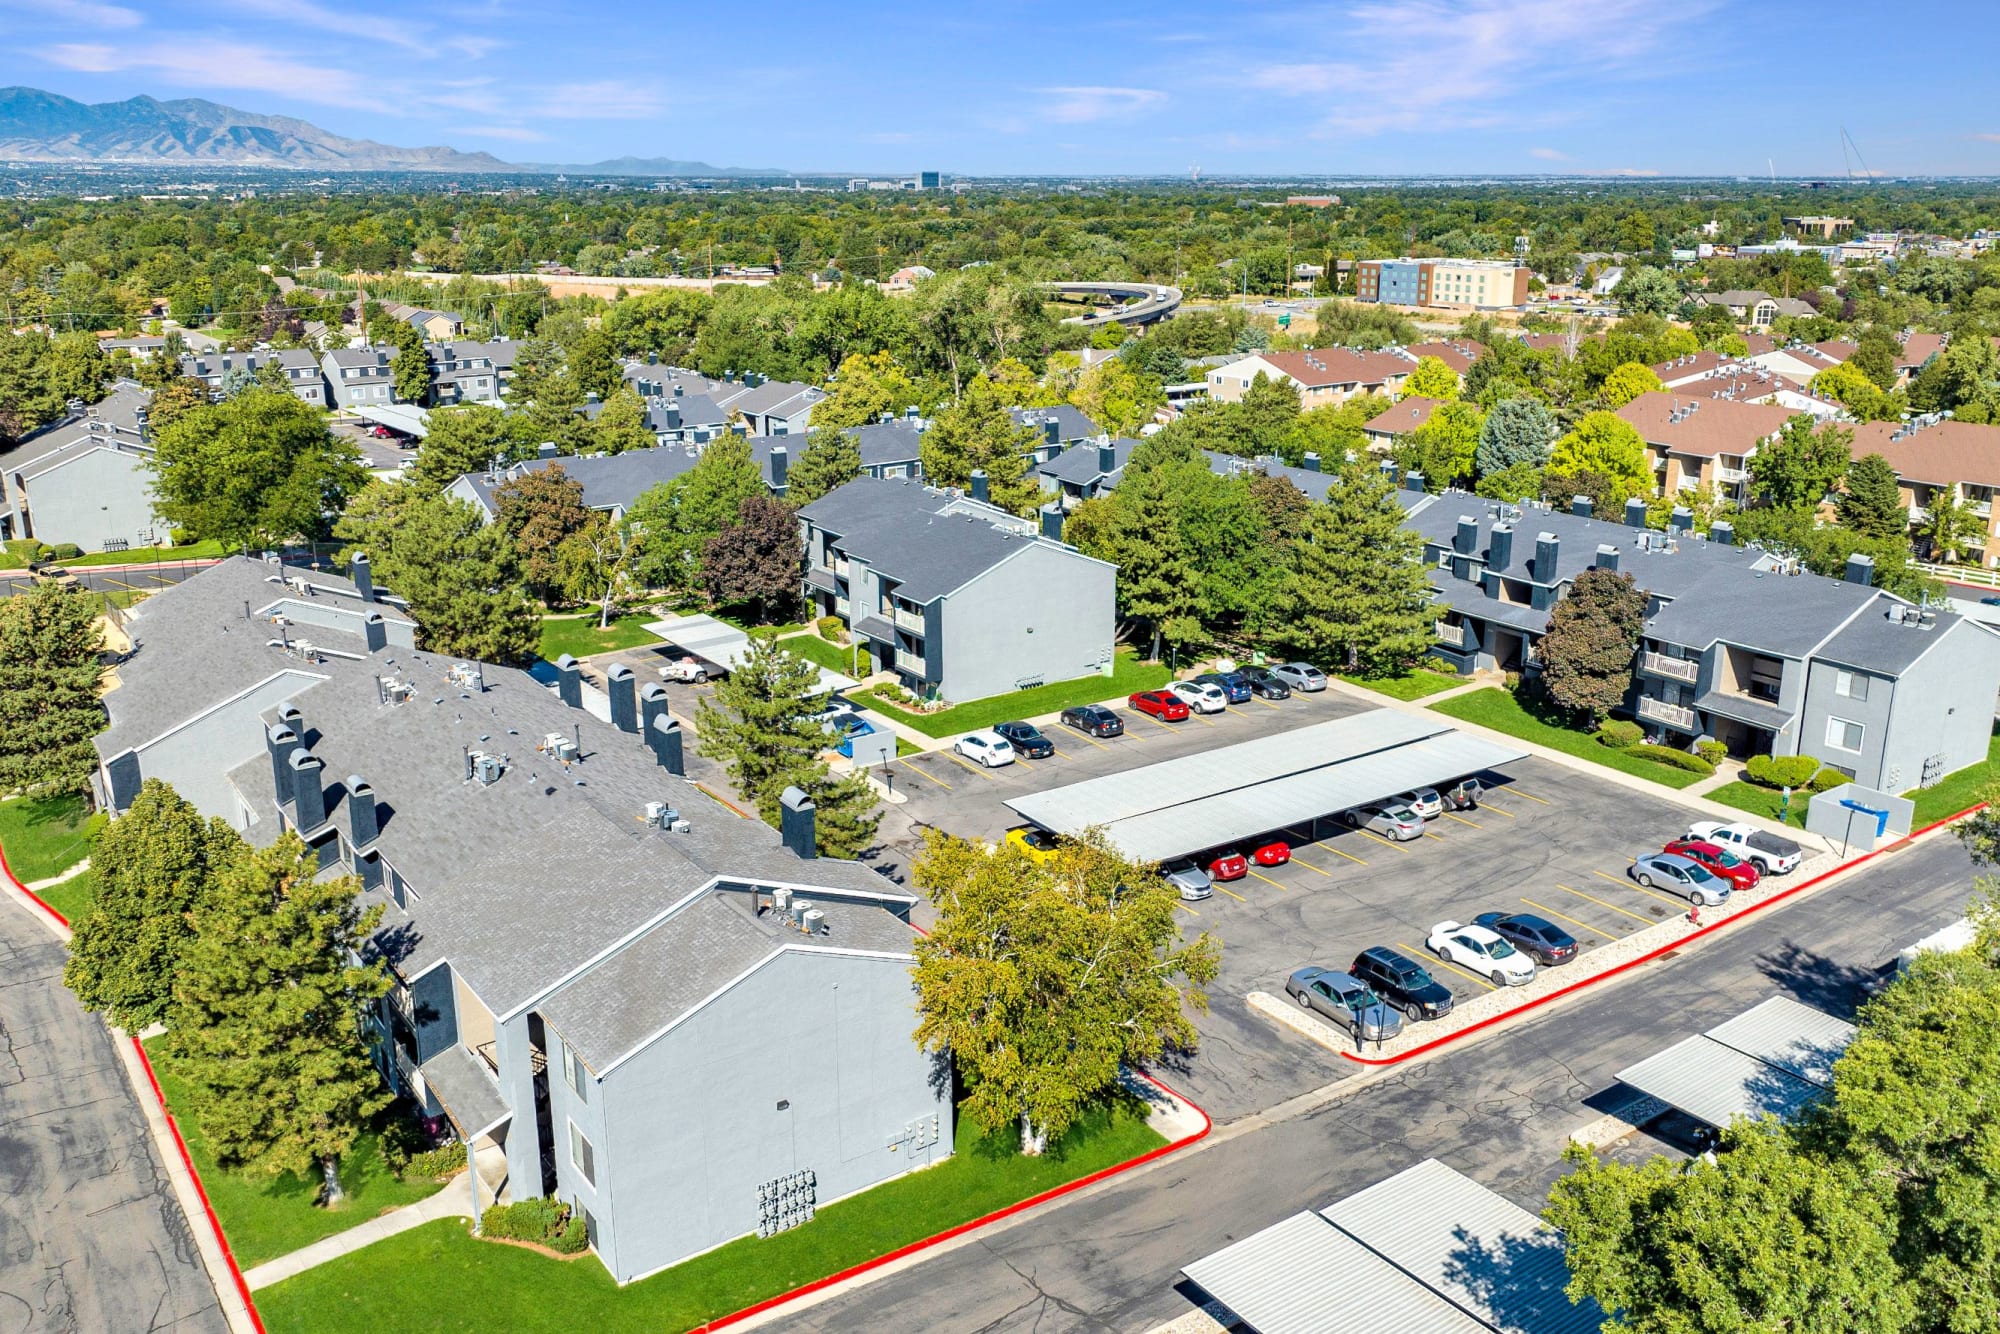 Aerial View of Property at Royal Farms Apartments in Salt Lake City, Utah